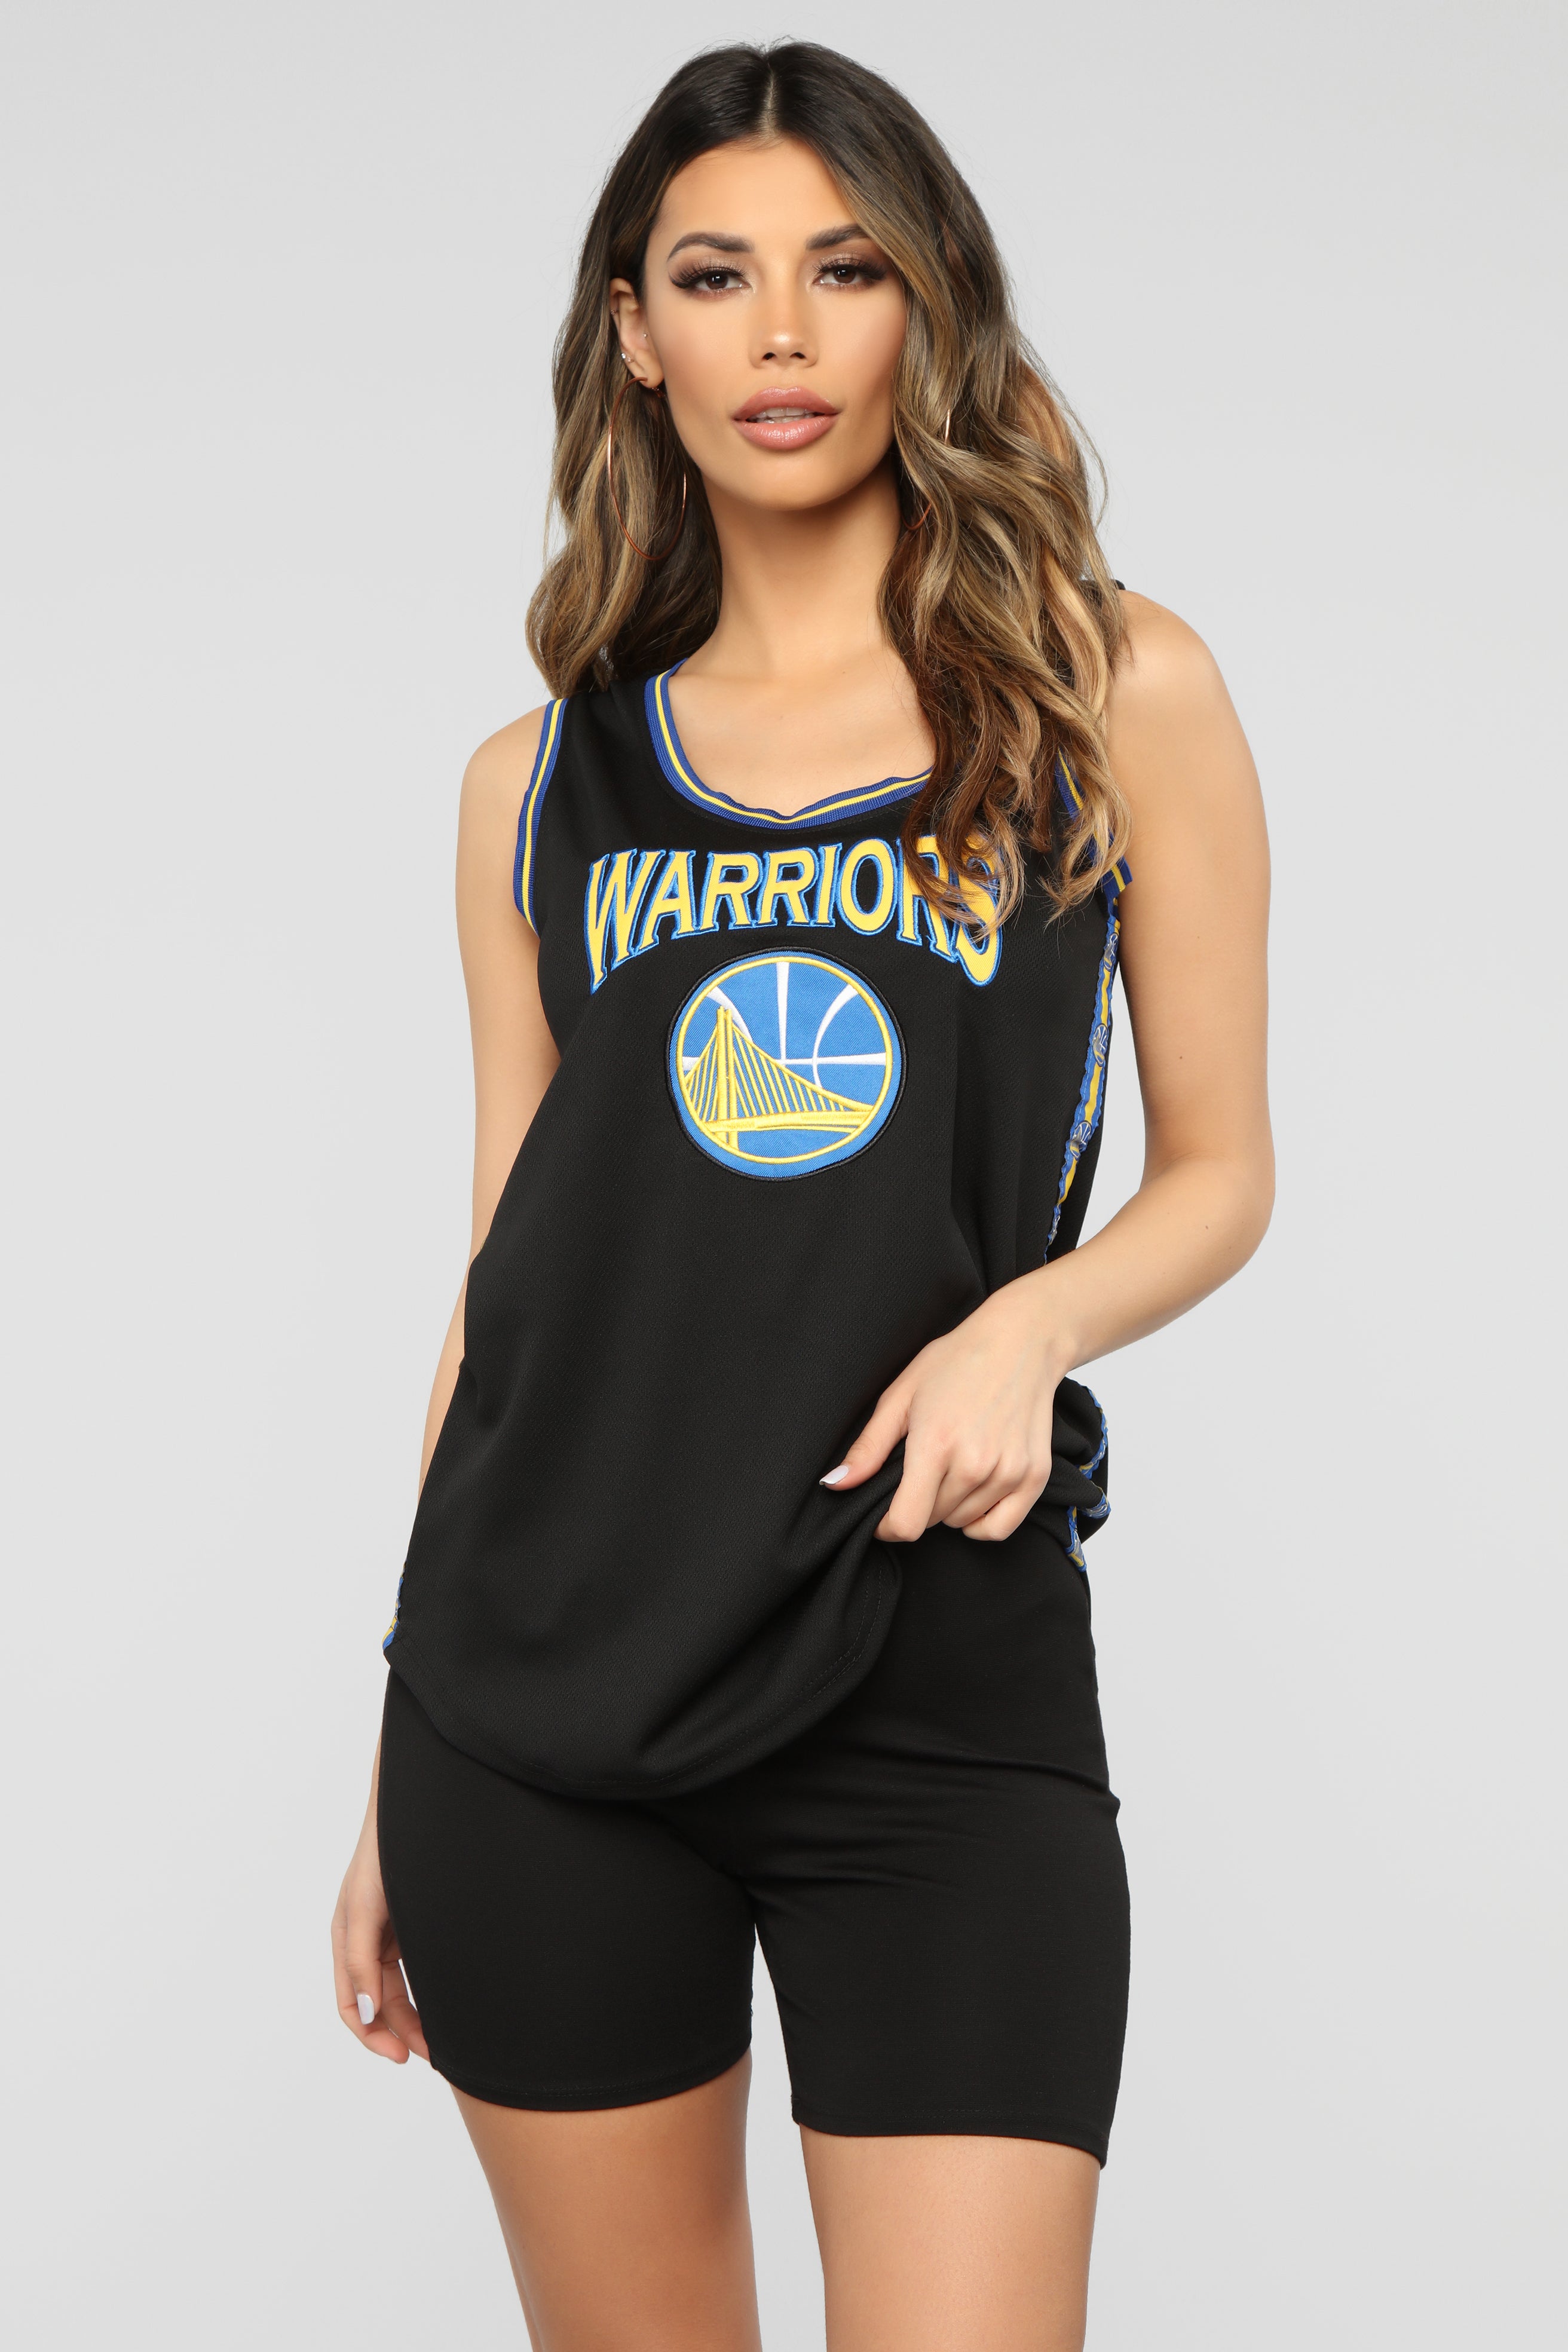 NBA Golden State Warriors 46 Black Jersey Shirt Size Large Womens